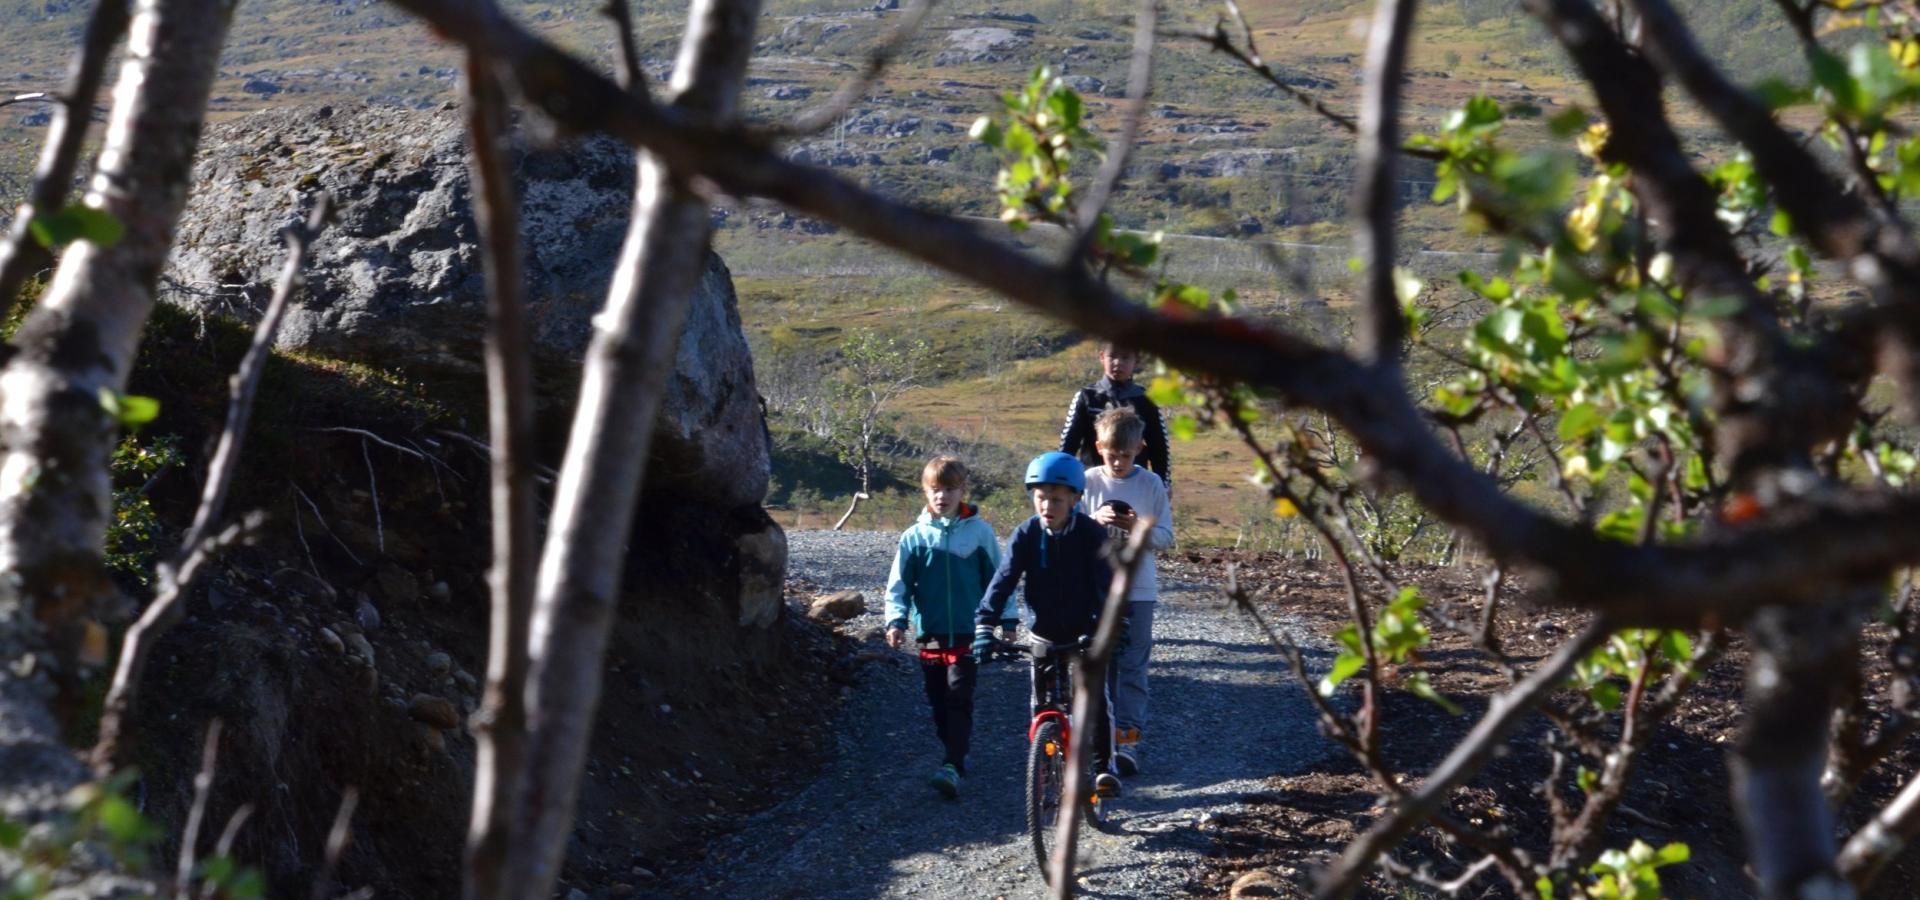 Kids biking along a gravelpath